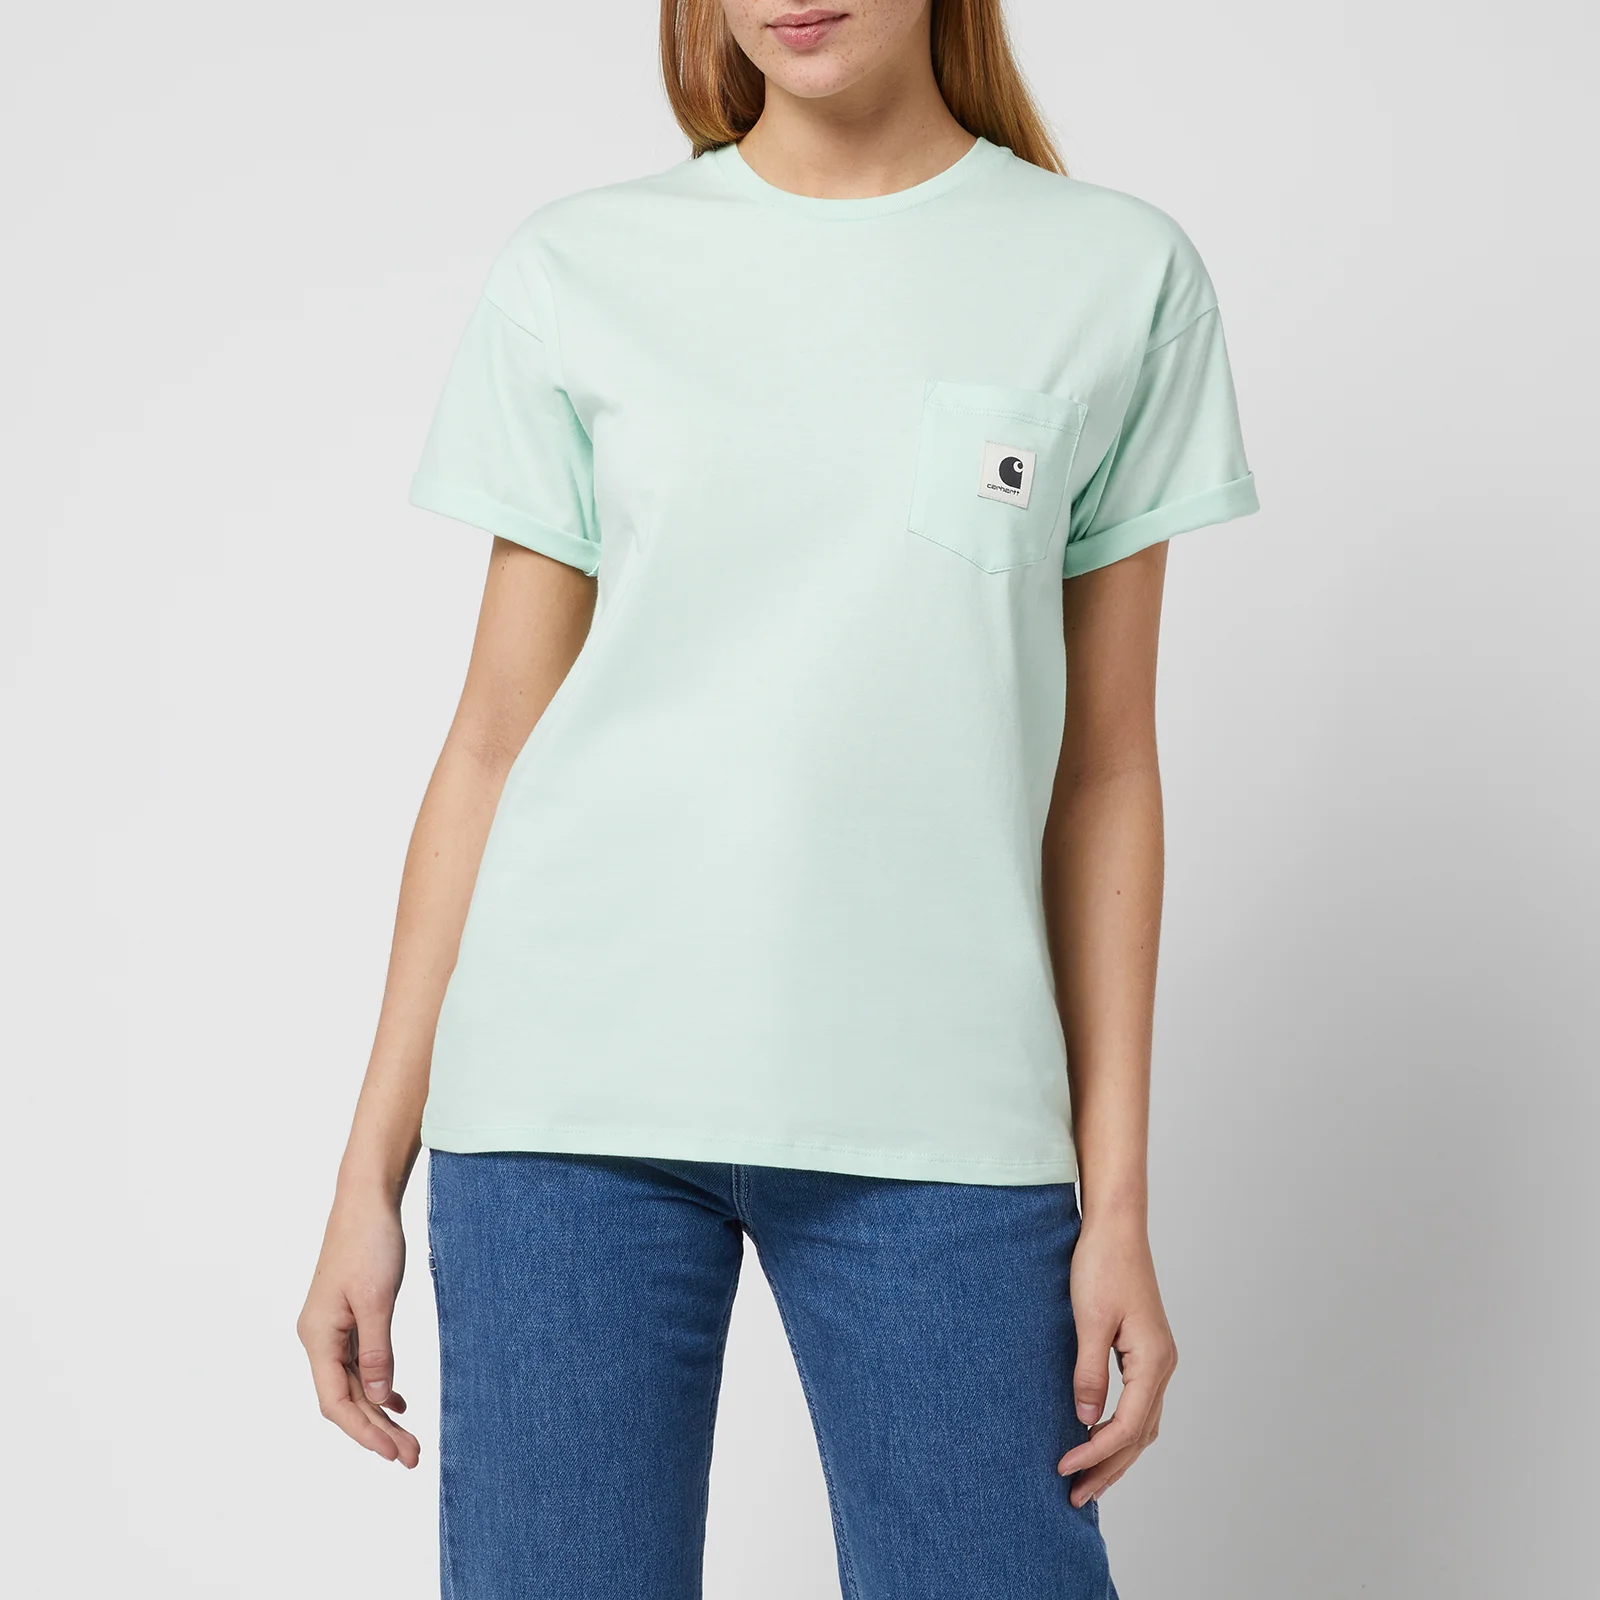 Carhartt WIP Women's S/S Pocket T-Shirt - Pale Spearmint Image 1